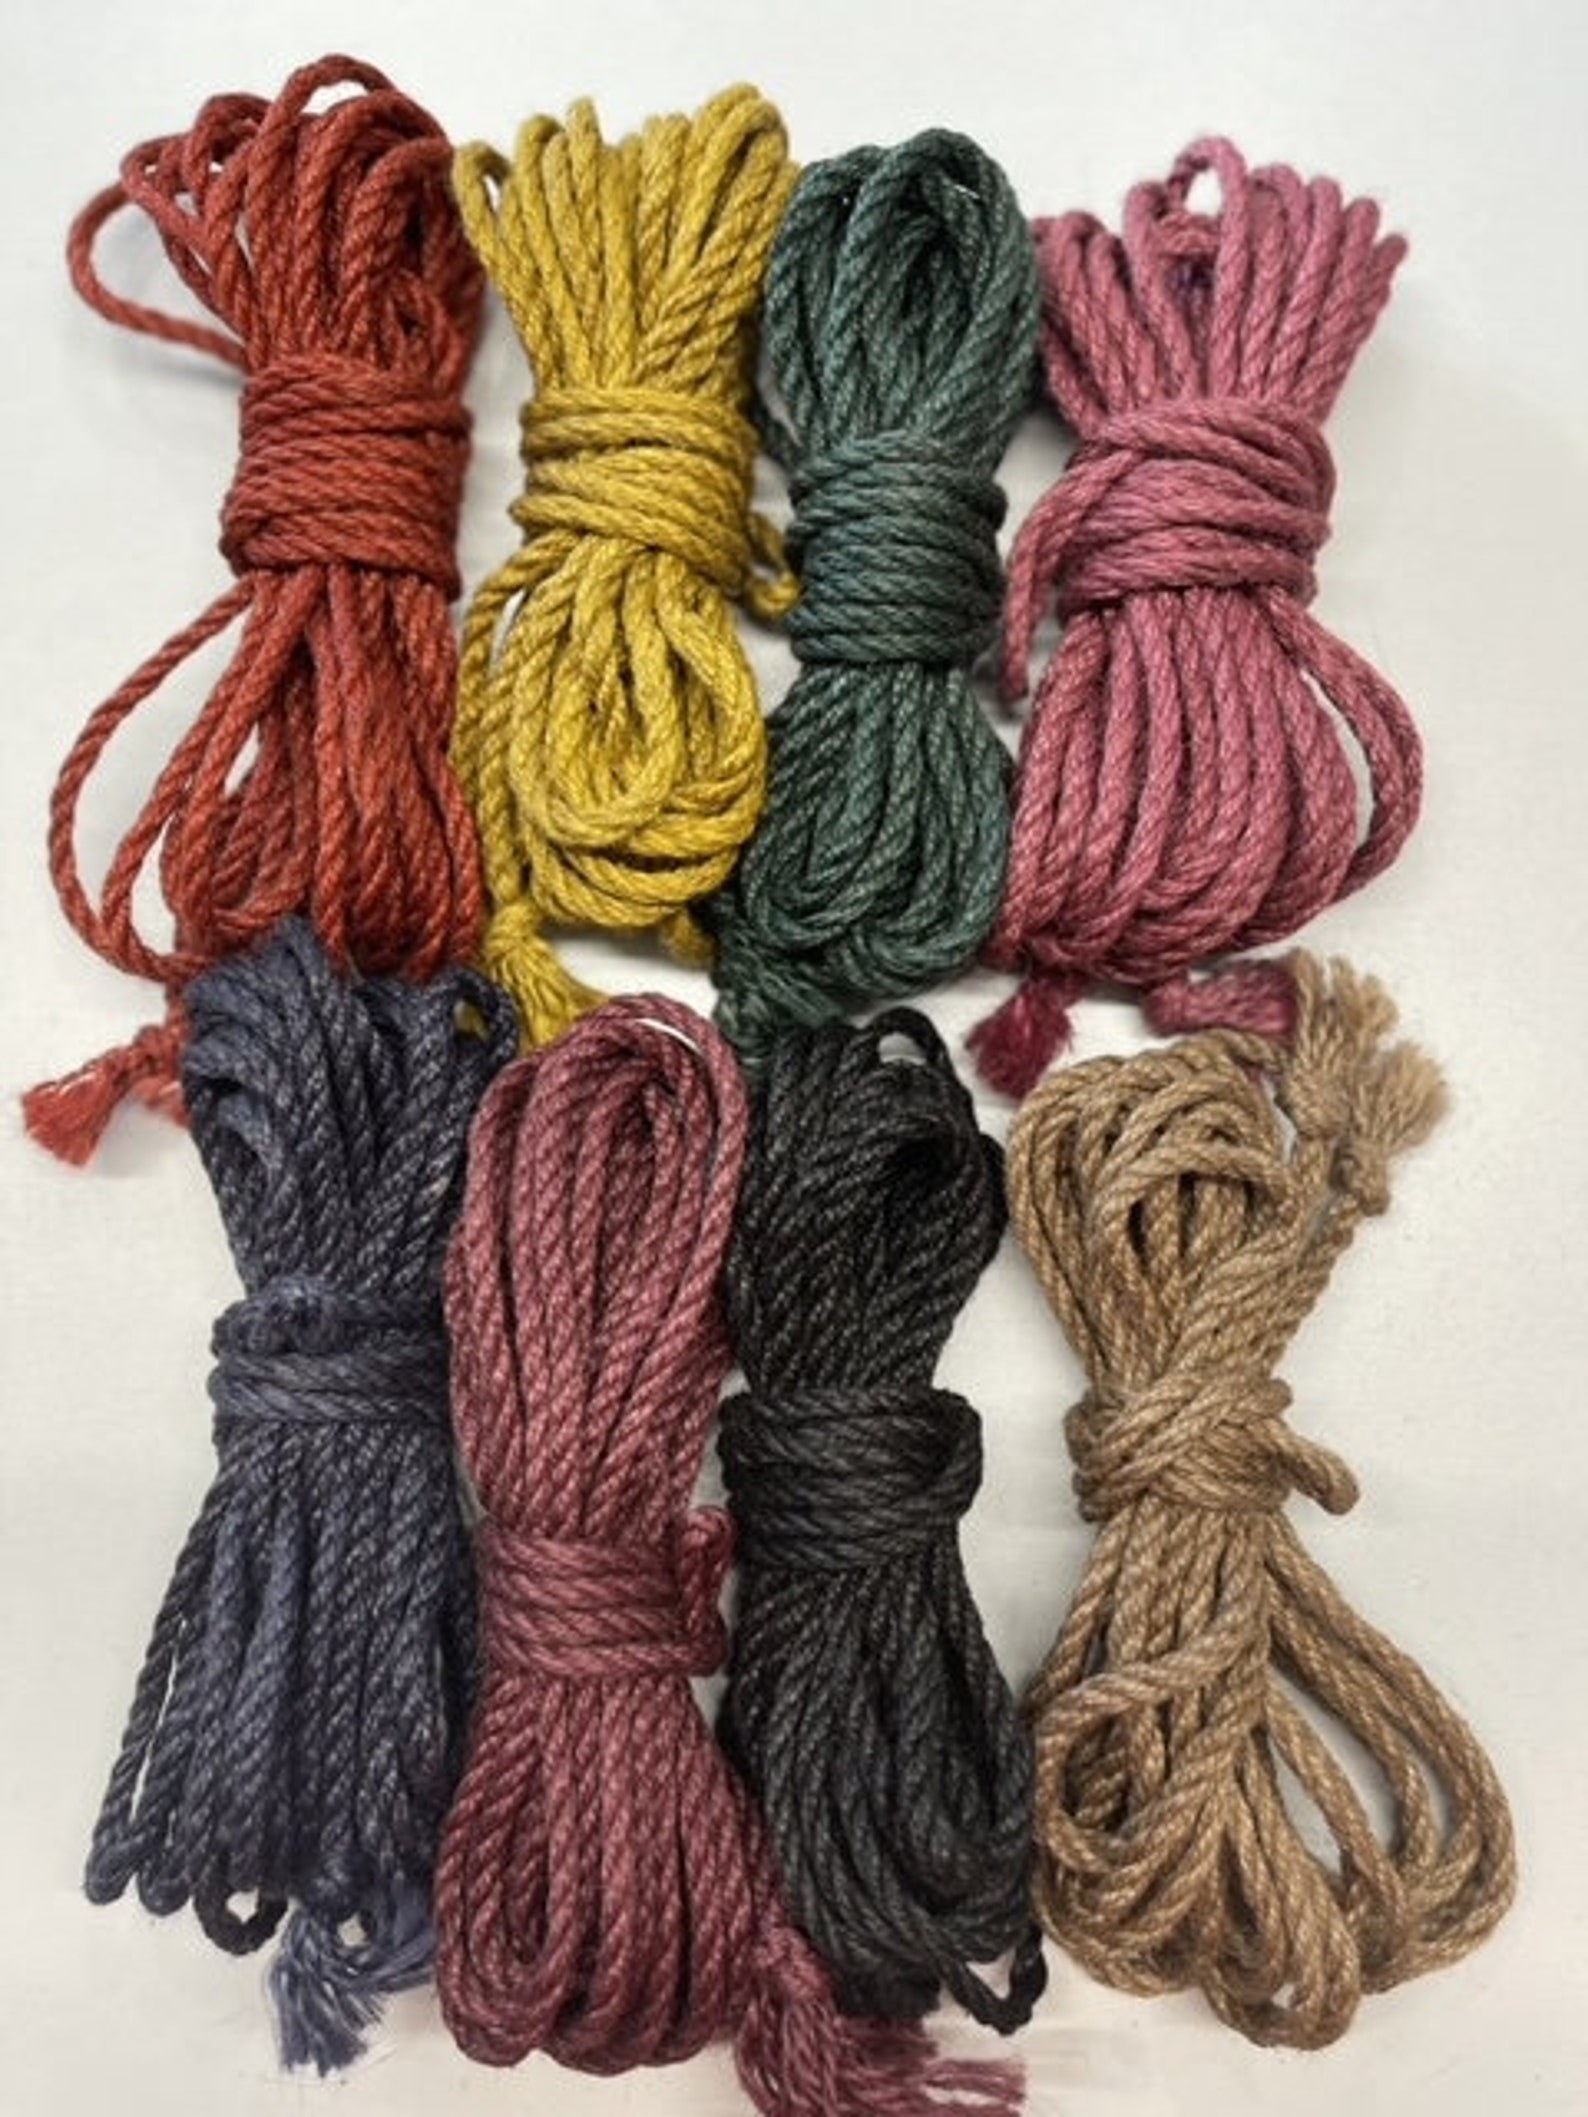 Shibari rope bundles in assorted colors